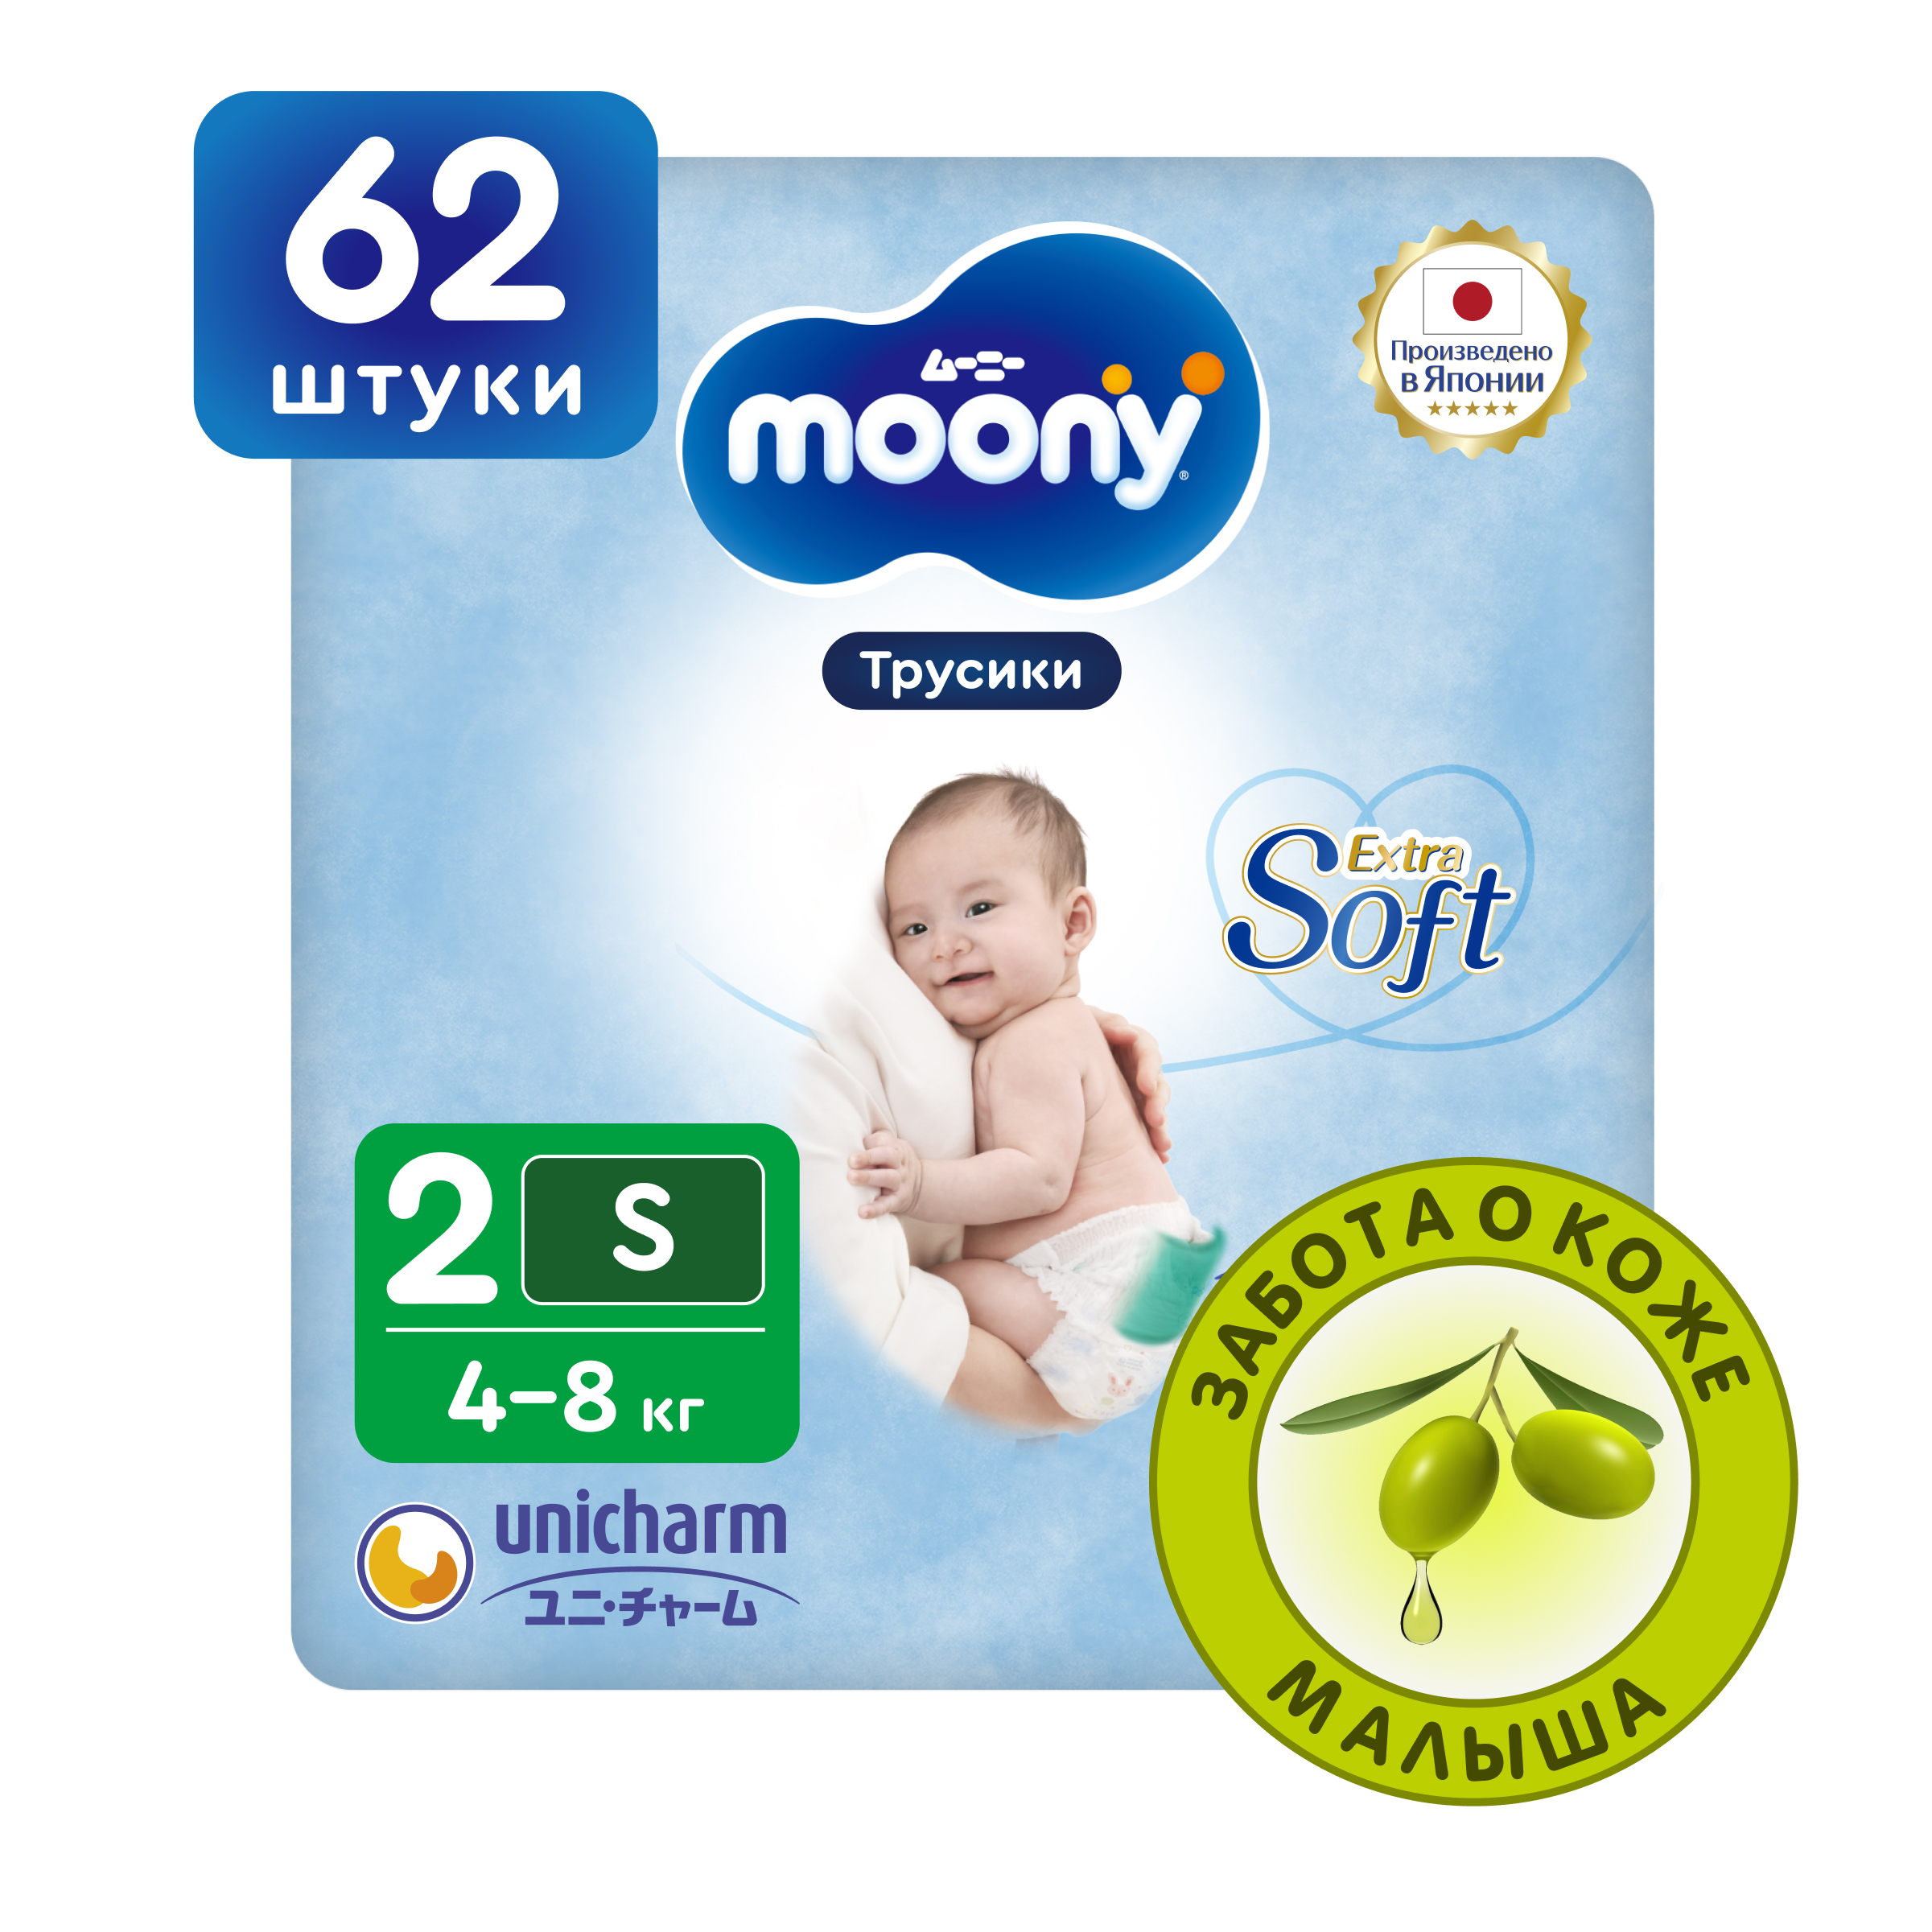 Японские подгузники трусики для новорожденных Moony Extra Soft 2 S, 4-8 кг, 62 шт подгузники трусики moony универсальные s 4 8 кг 62 шт